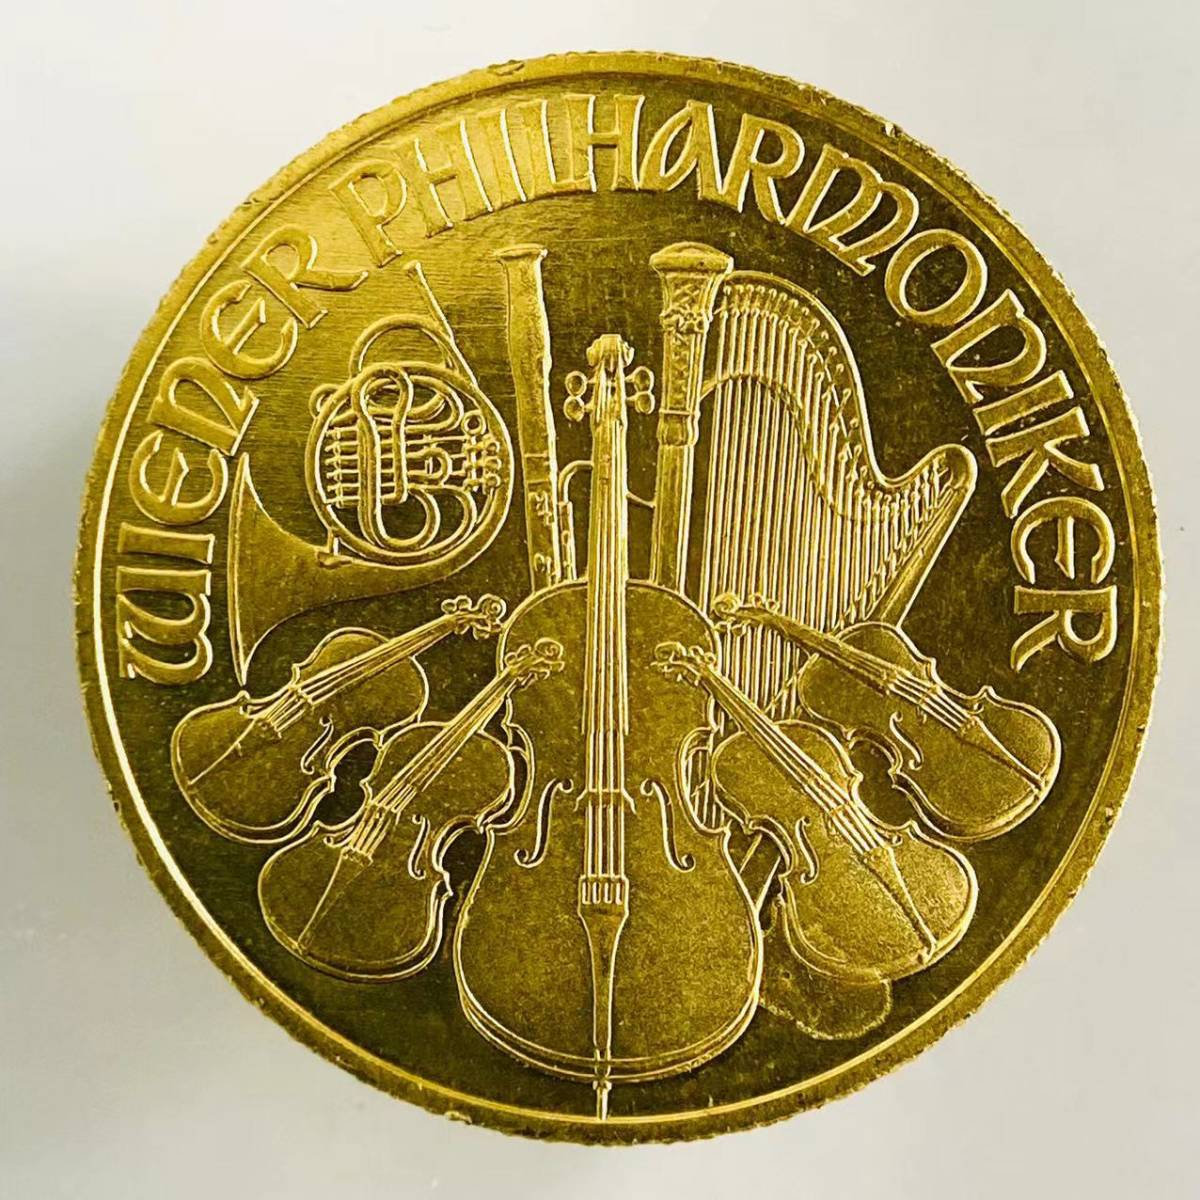 ウィーン金貨 オーストリア造幣局発行 1993年 7.8g 24金 1/4オンス 純金 音楽 楽器 コイン イエローゴールド コレクション Gold